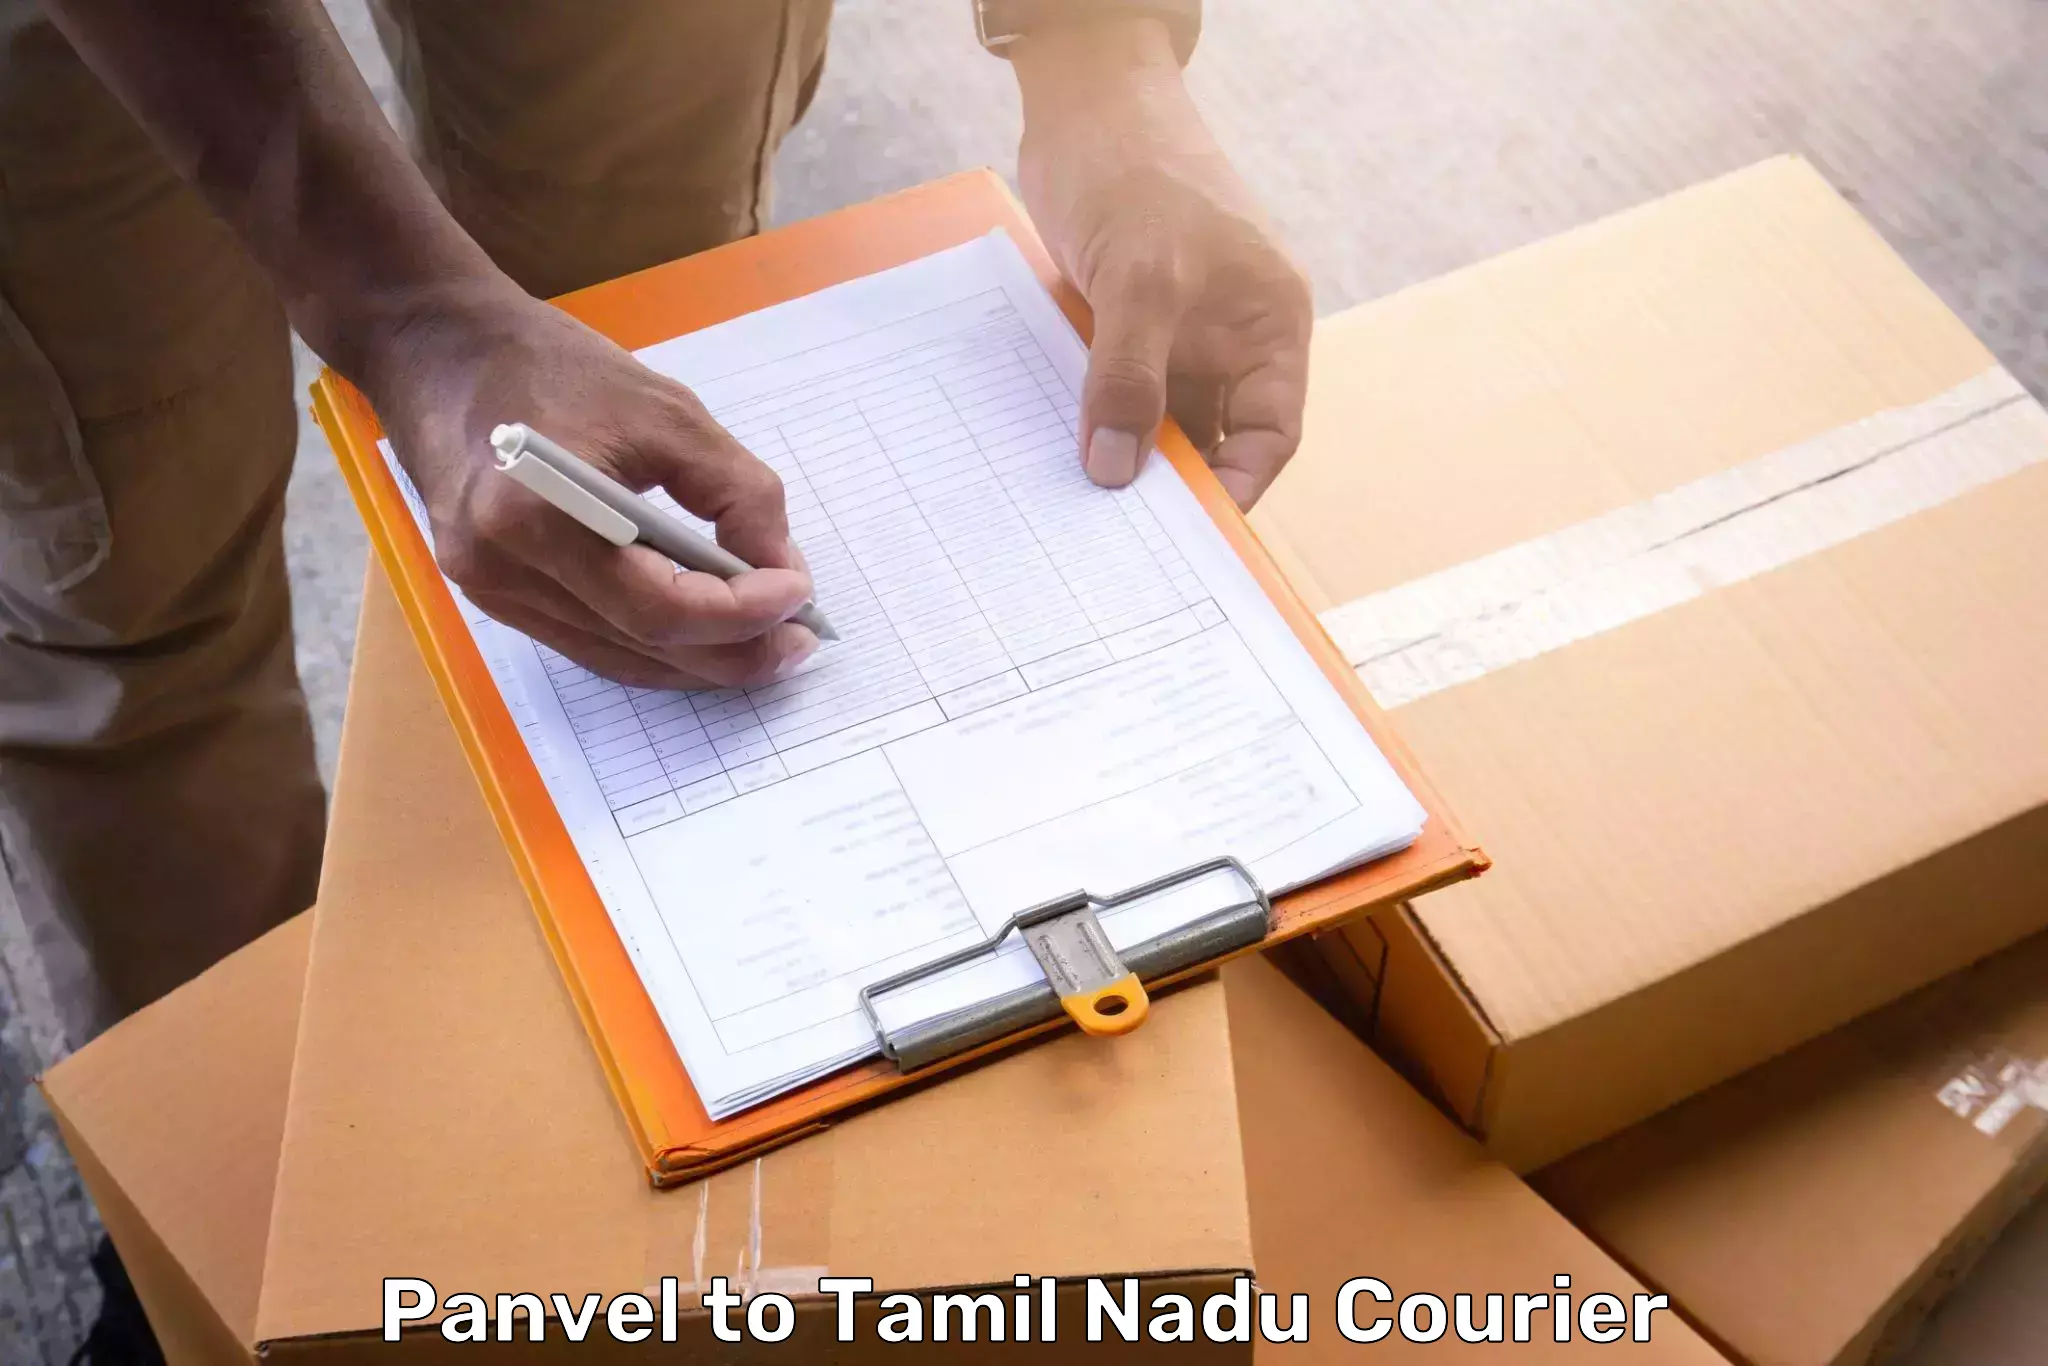 Luggage shipment processing Panvel to Perambalur